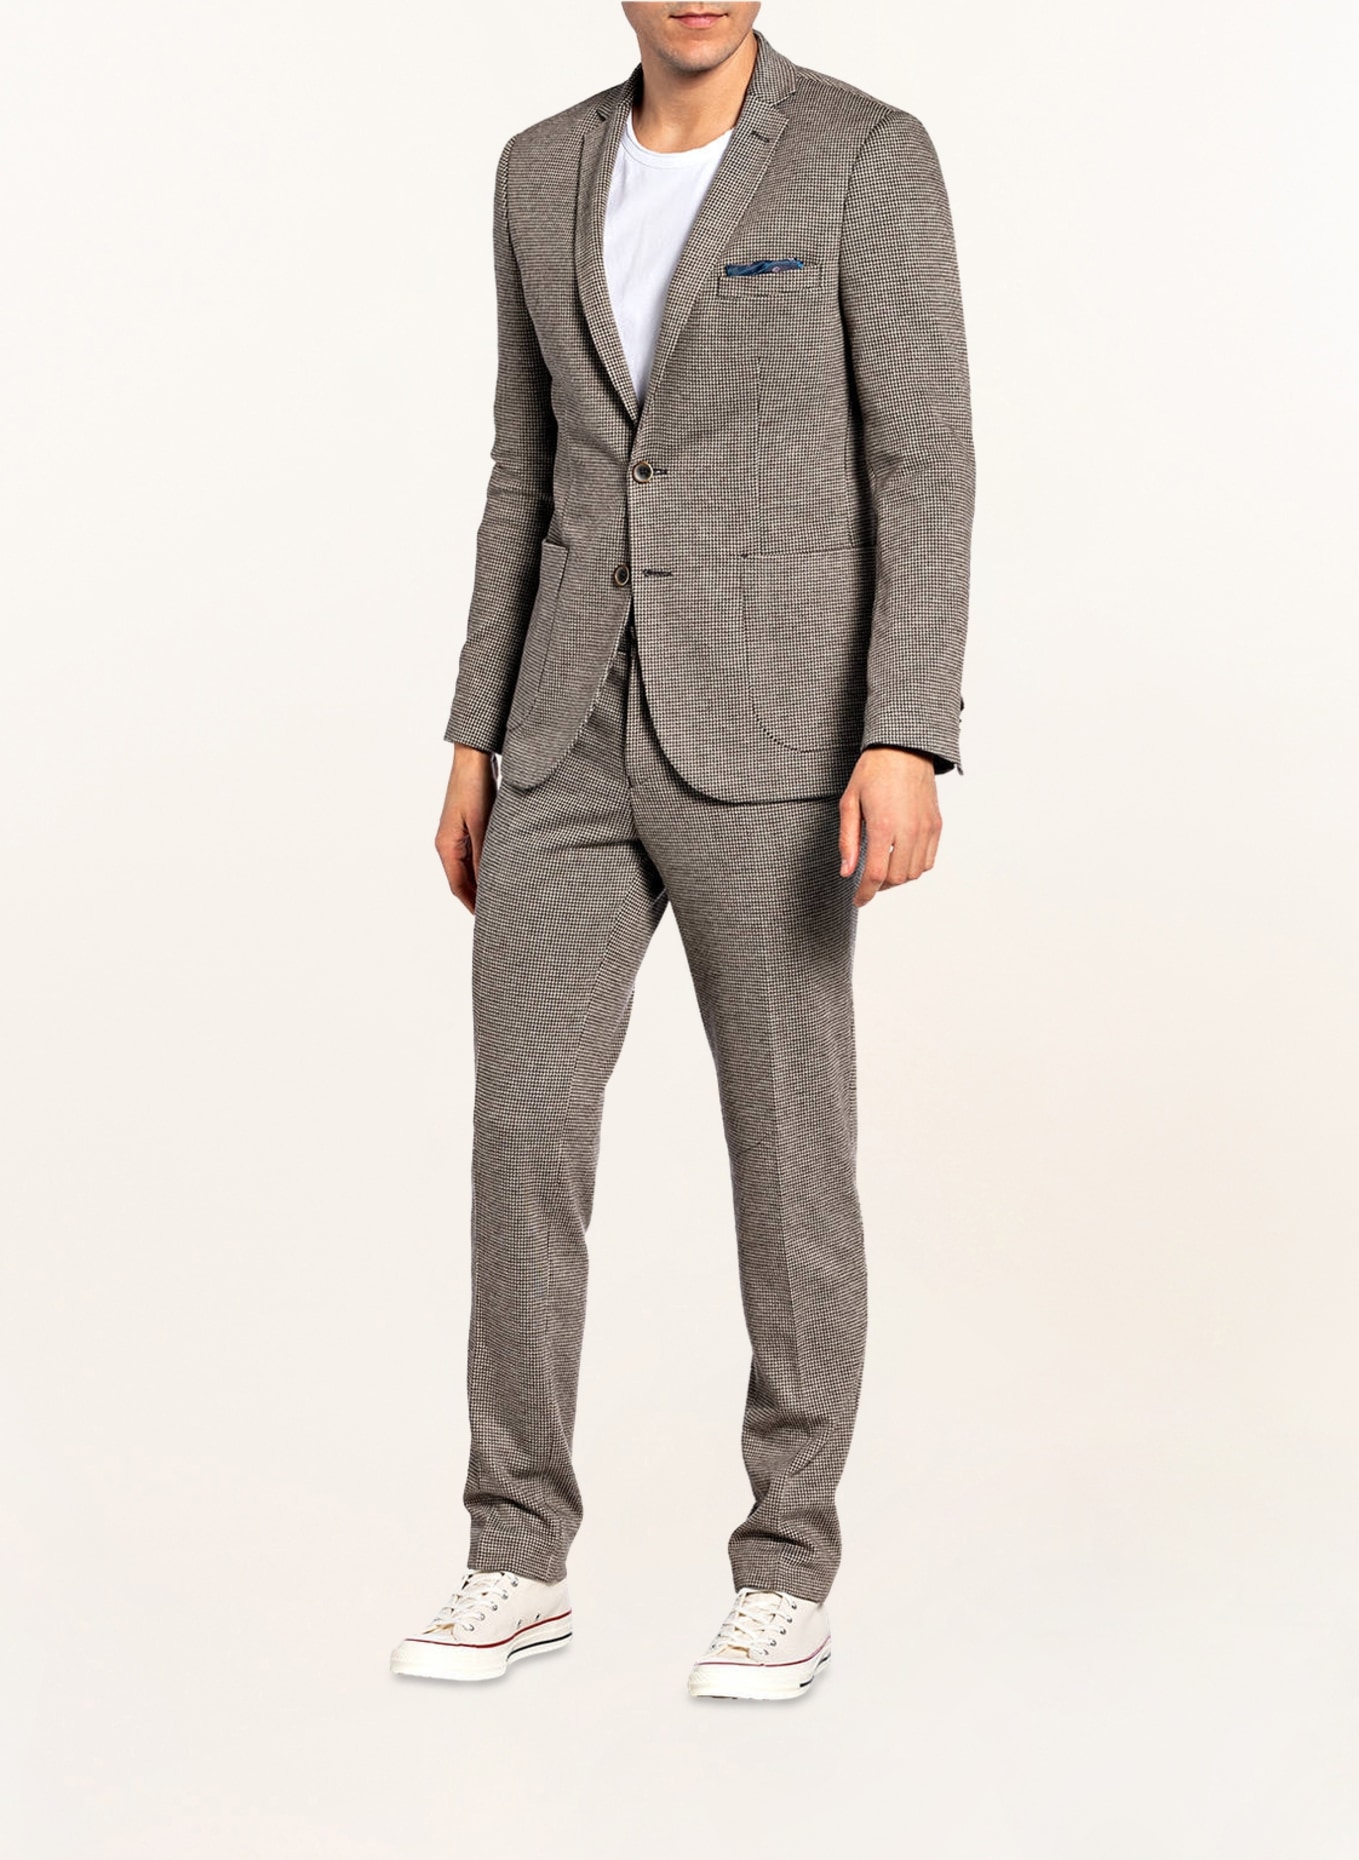 Suits | Slim Fit Grey Jersey Suit Jacket | Burton